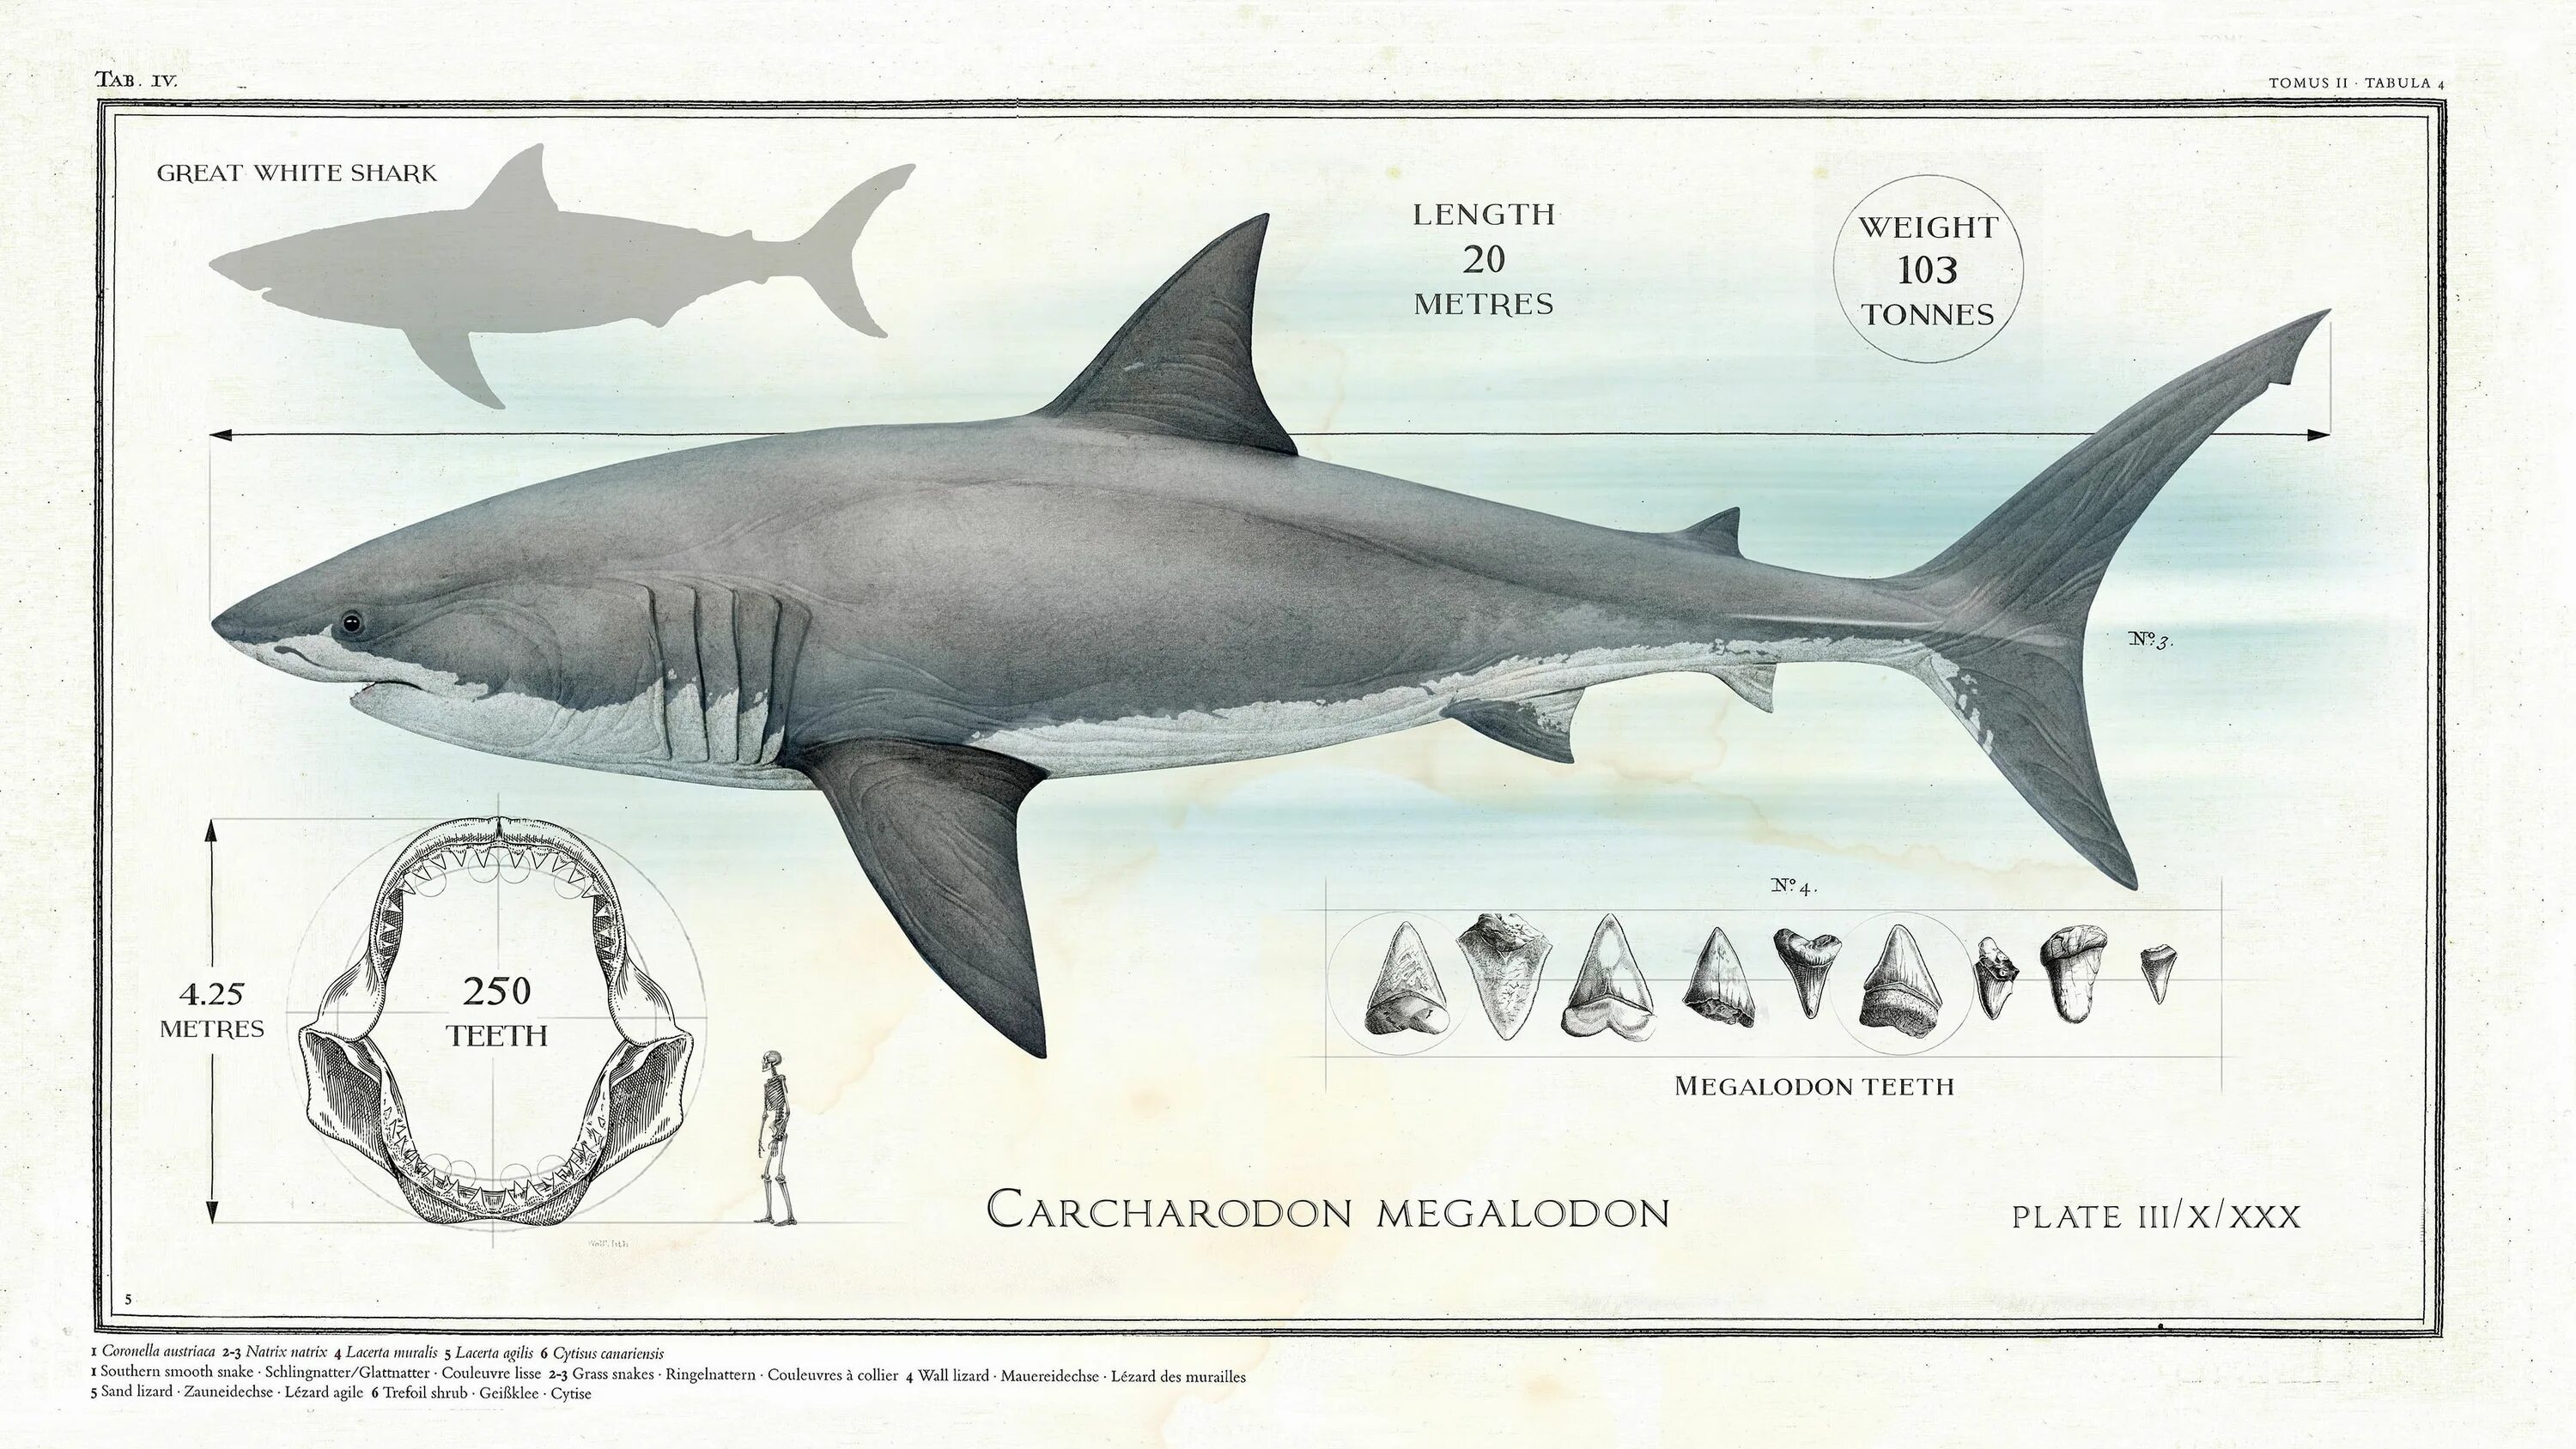 Какой длины акула. Вес МЕГАЛОДОНА акула. МЕГАЛОДОН длина и вес. Кархародон МЕГАЛОДОН вес. Кархародон МЕГАЛОДОН И человек.